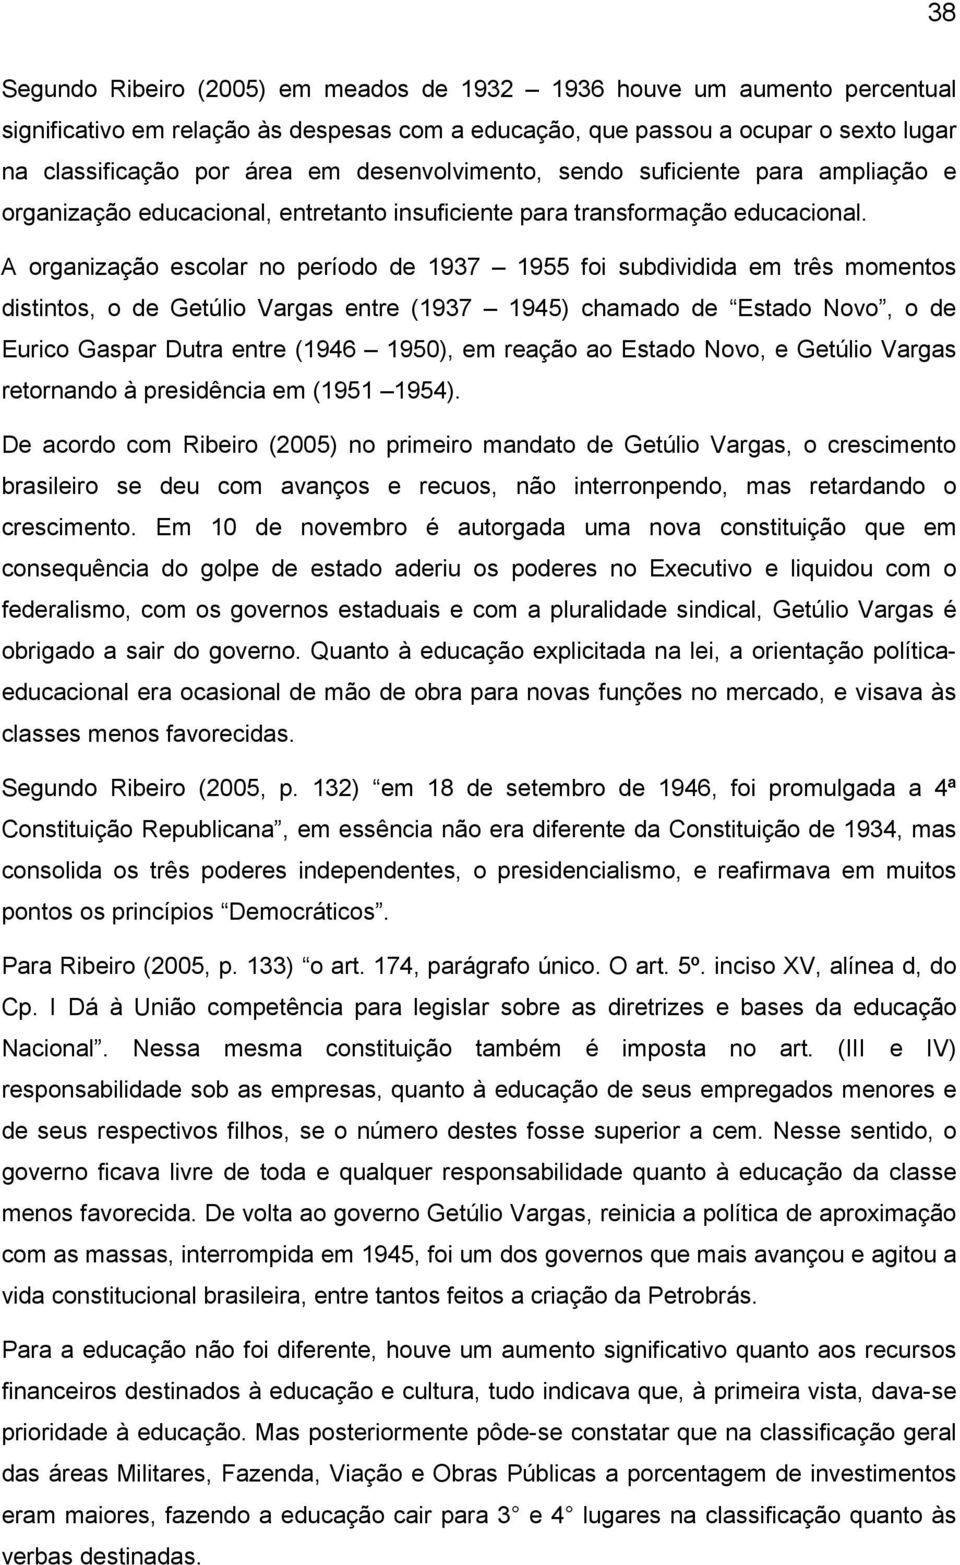 A organização escolar no período de 1937 1955 foi subdividida em três momentos distintos, o de Getúlio Vargas entre (1937 1945) chamado de Estado Novo, o de Eurico Gaspar Dutra entre (1946 1950), em